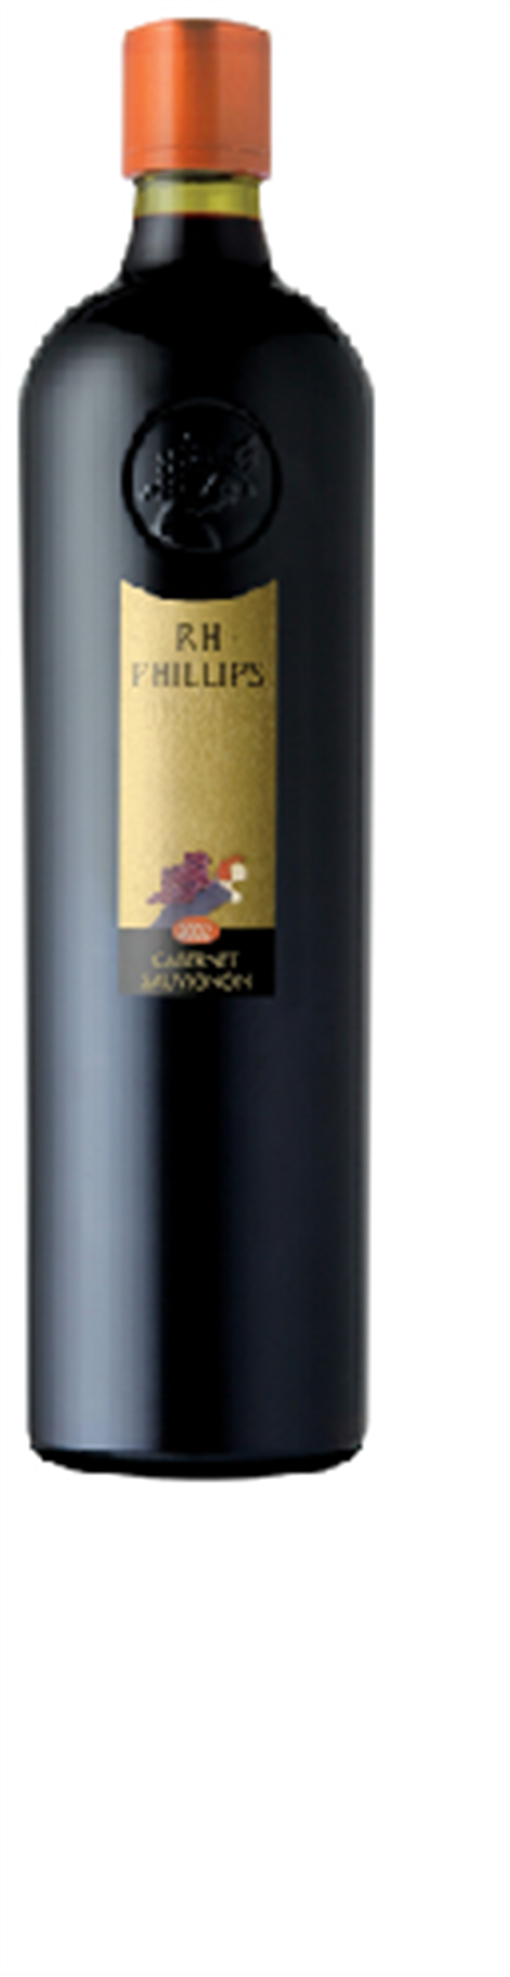 飛利浦卡貝娜蘇維翁紅酒 2000 R.H. Phillips Cabernet Sauvignon 2000